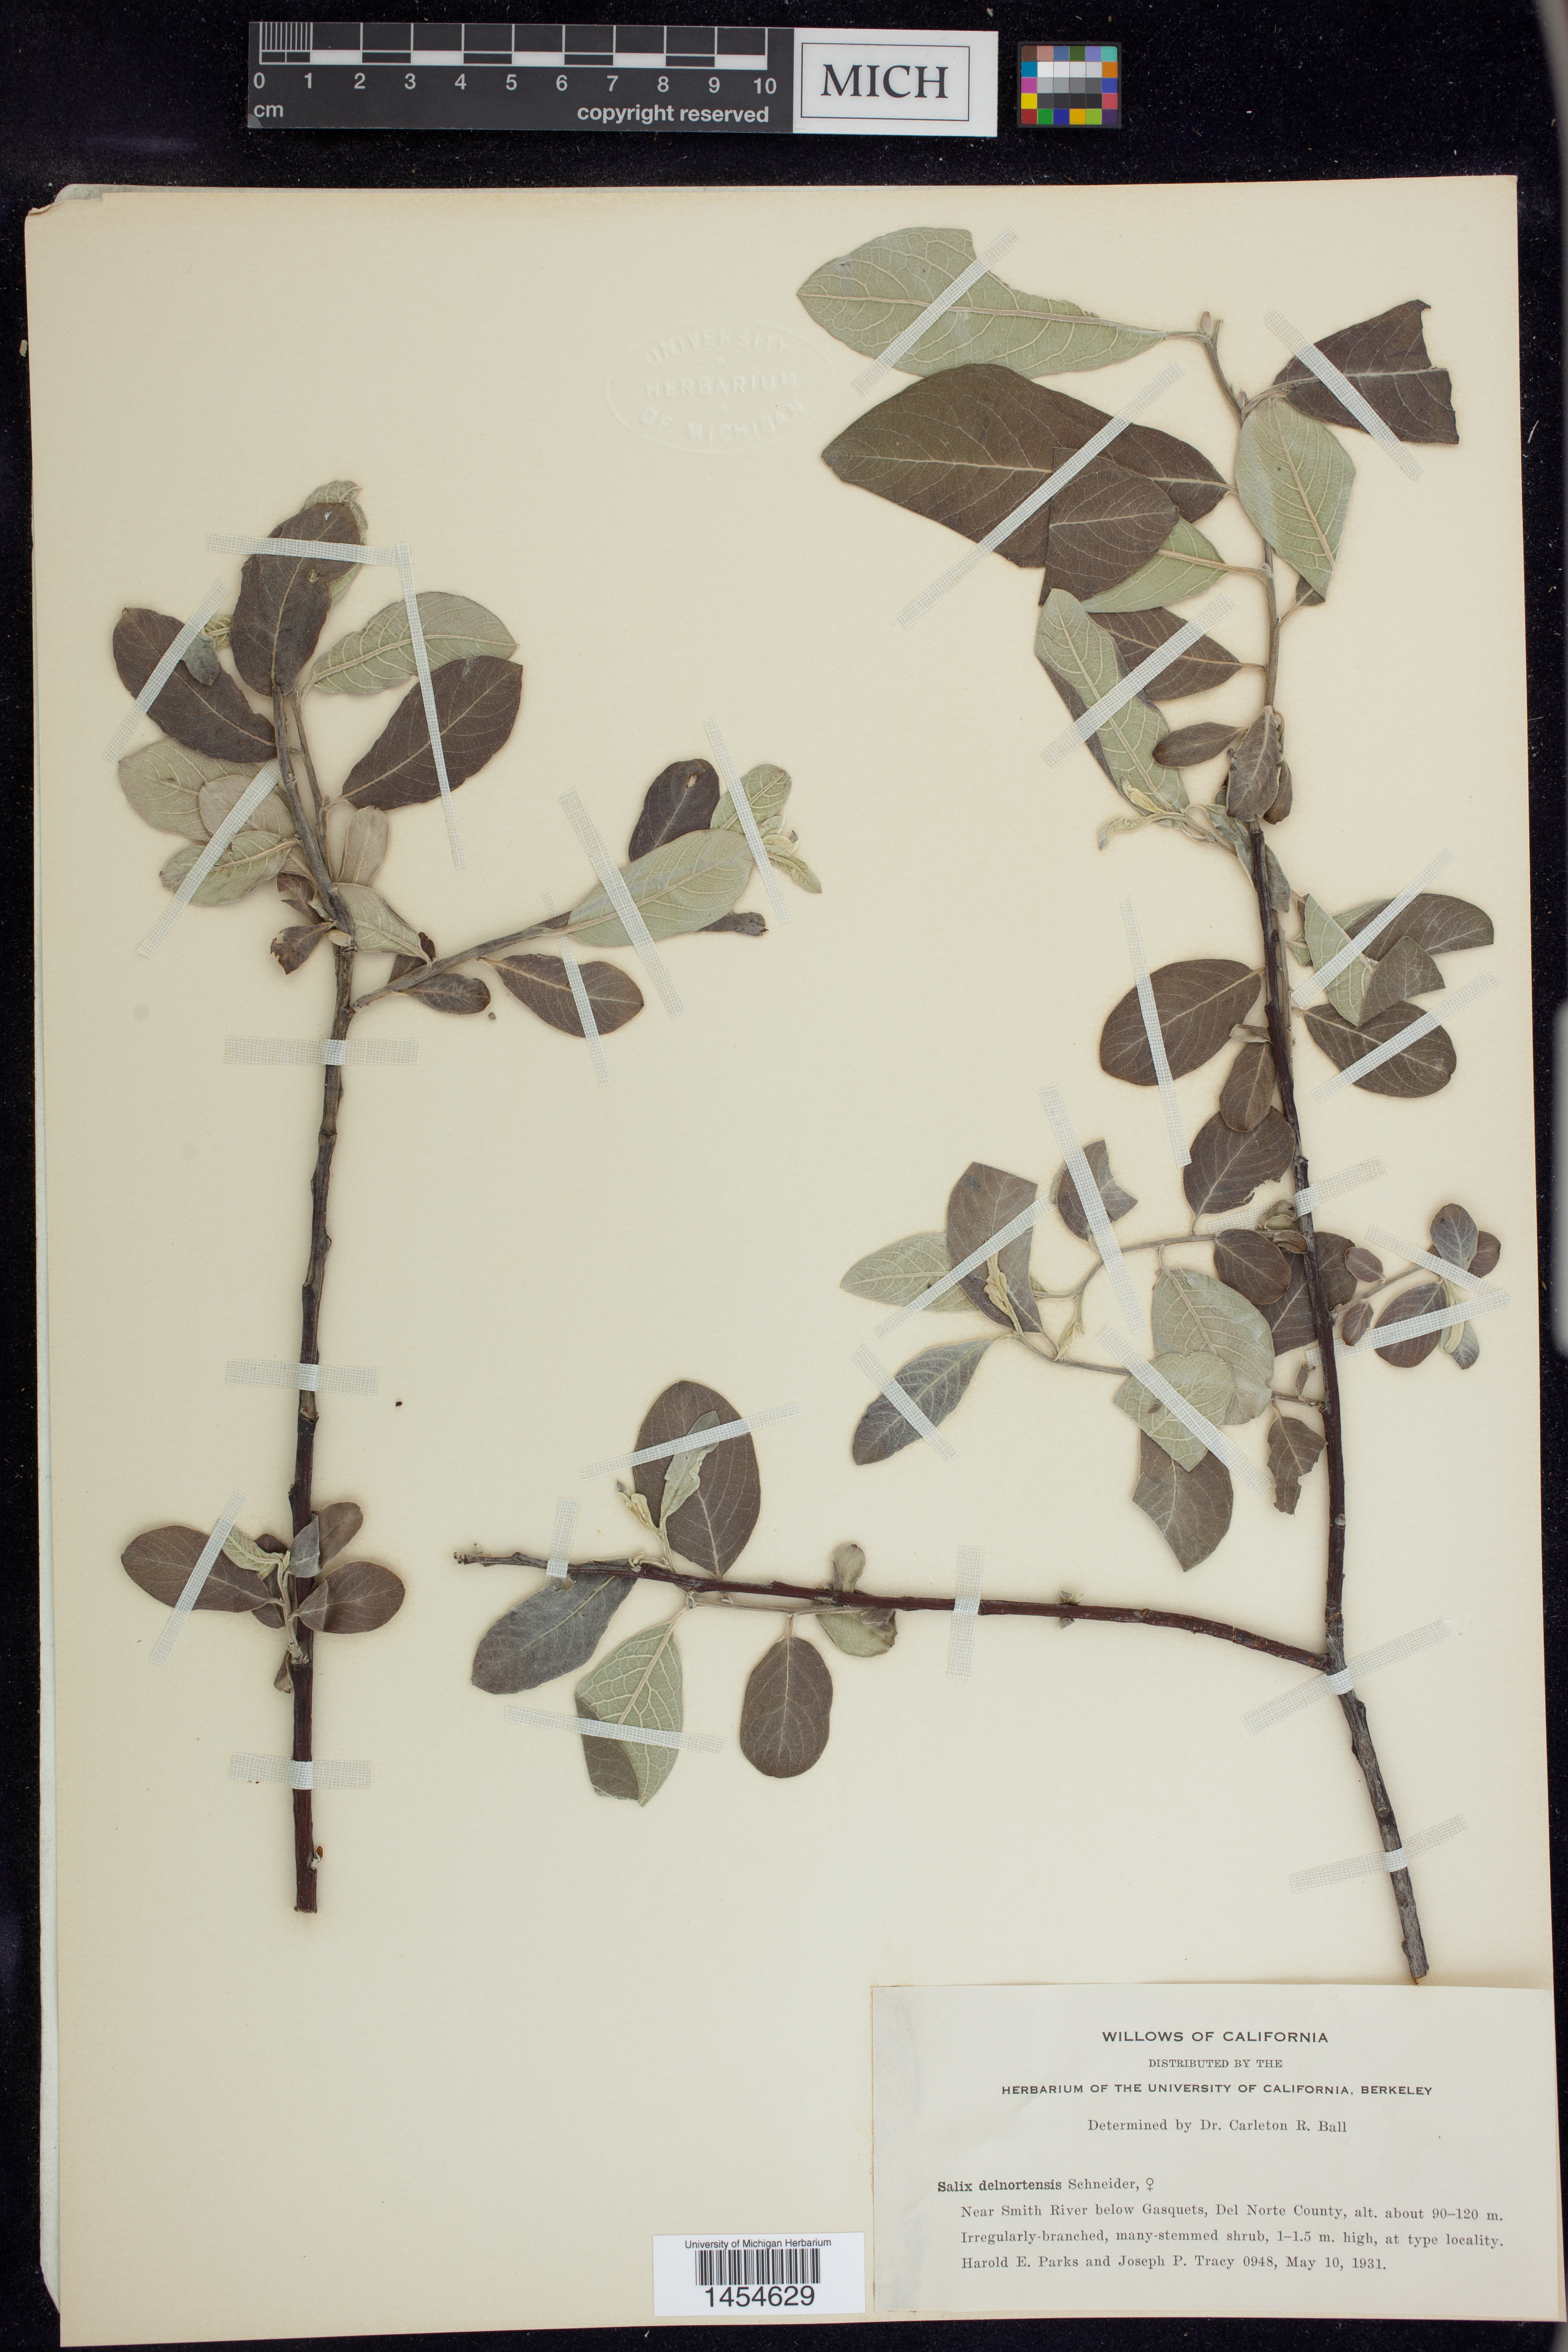 Salix delnortensis image